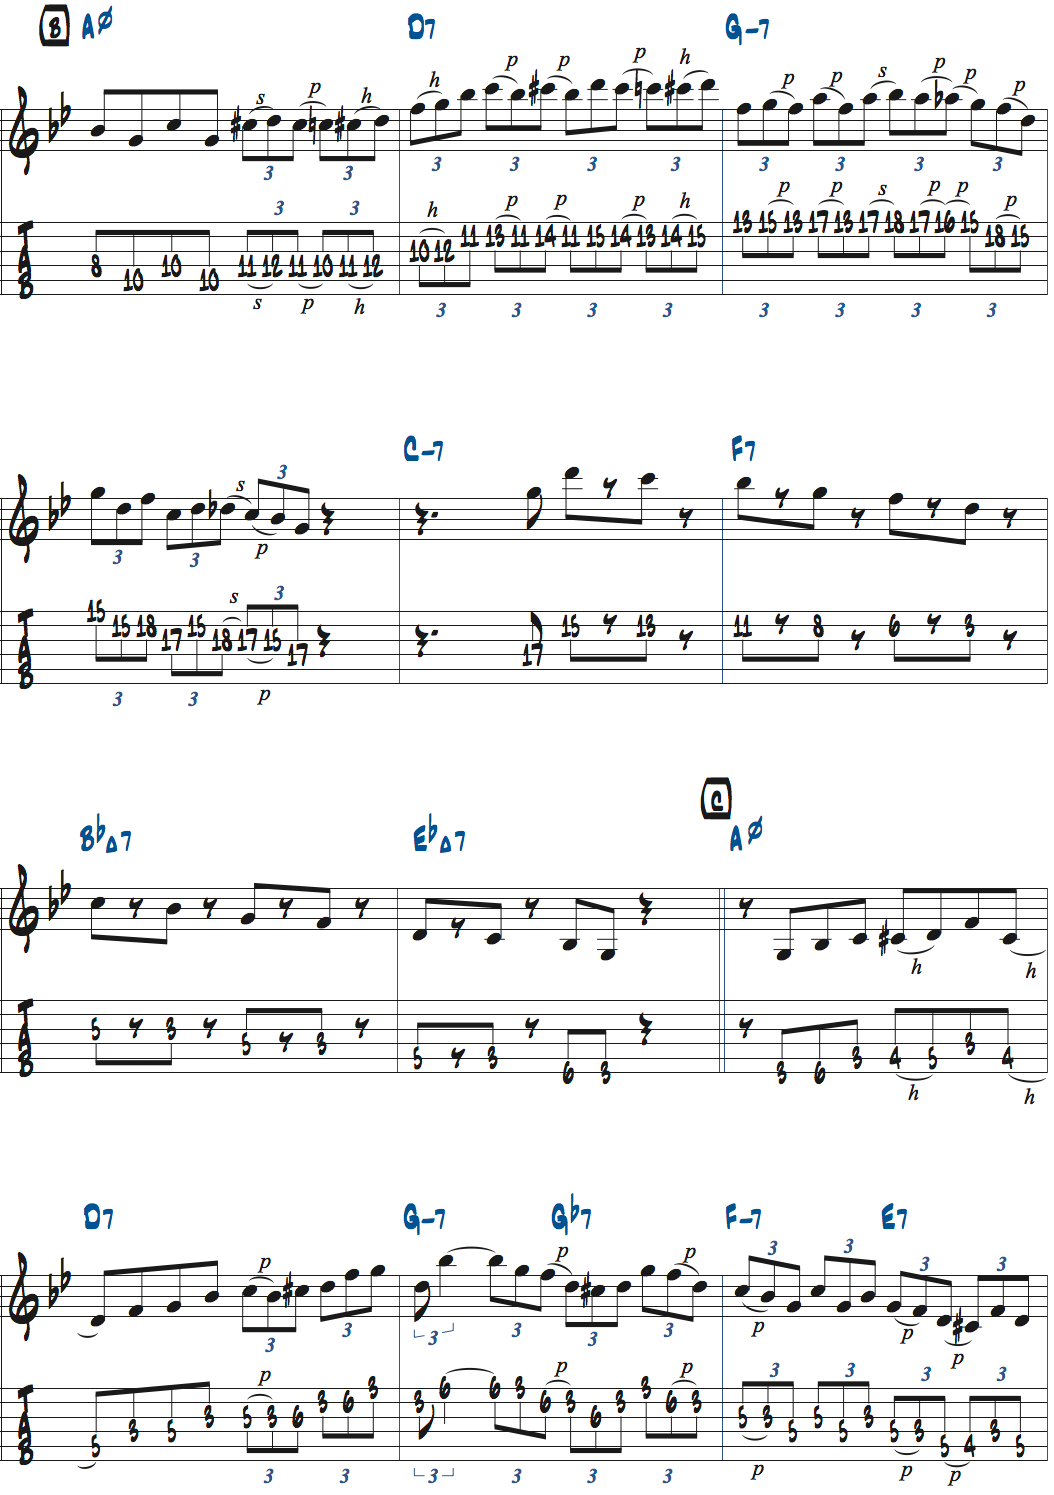 Gマイナーペンタトニックスケールでアドリブした例楽譜ページ2